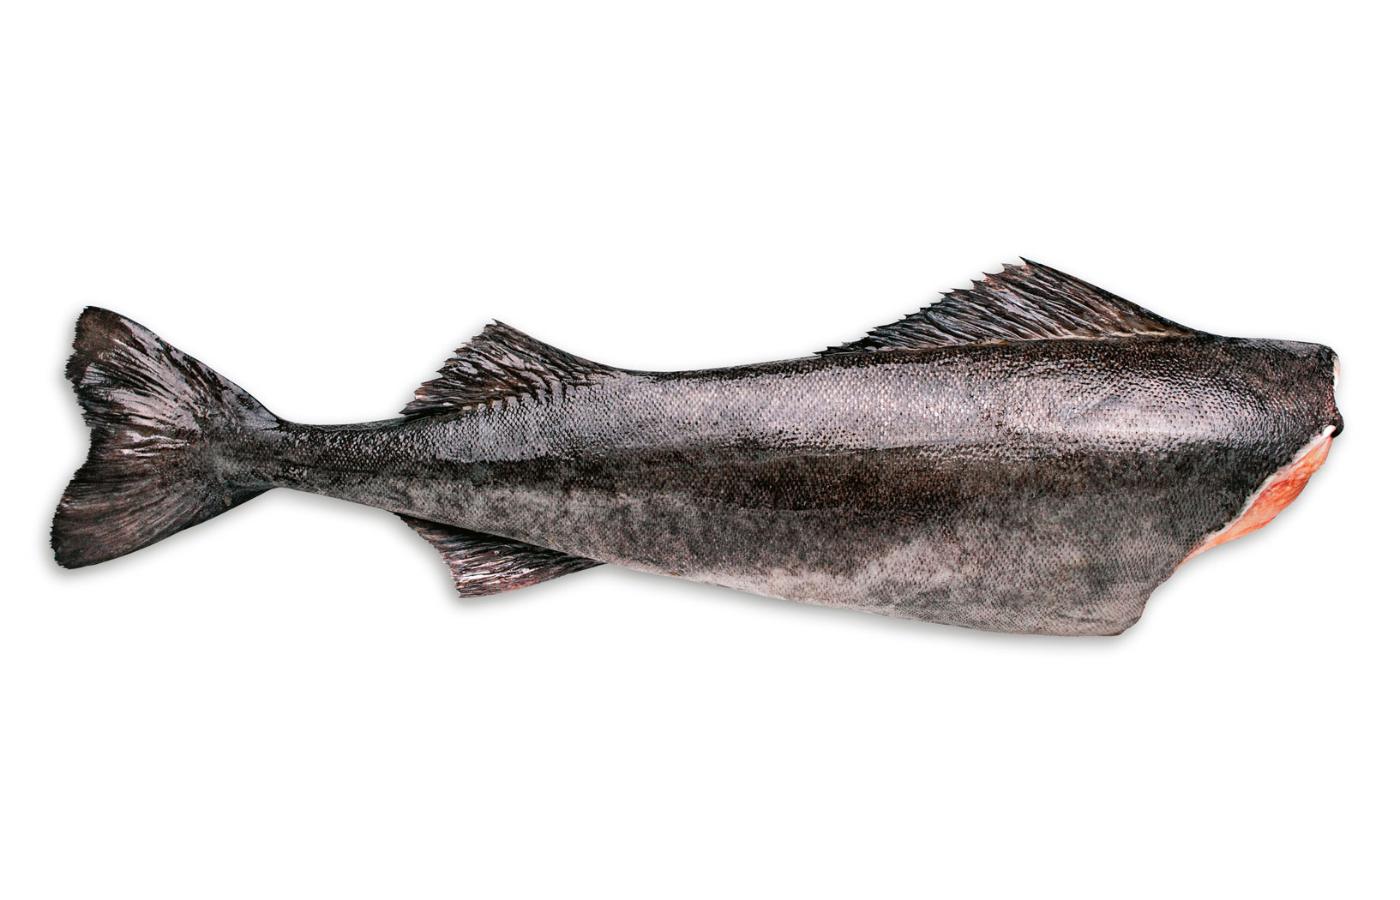 Wśród ryb „niezalecanych” znalazły się m.in. łosoś bałtycki, śledź i szprot – wszystkie trzy gatunki w postaci wędzonej.